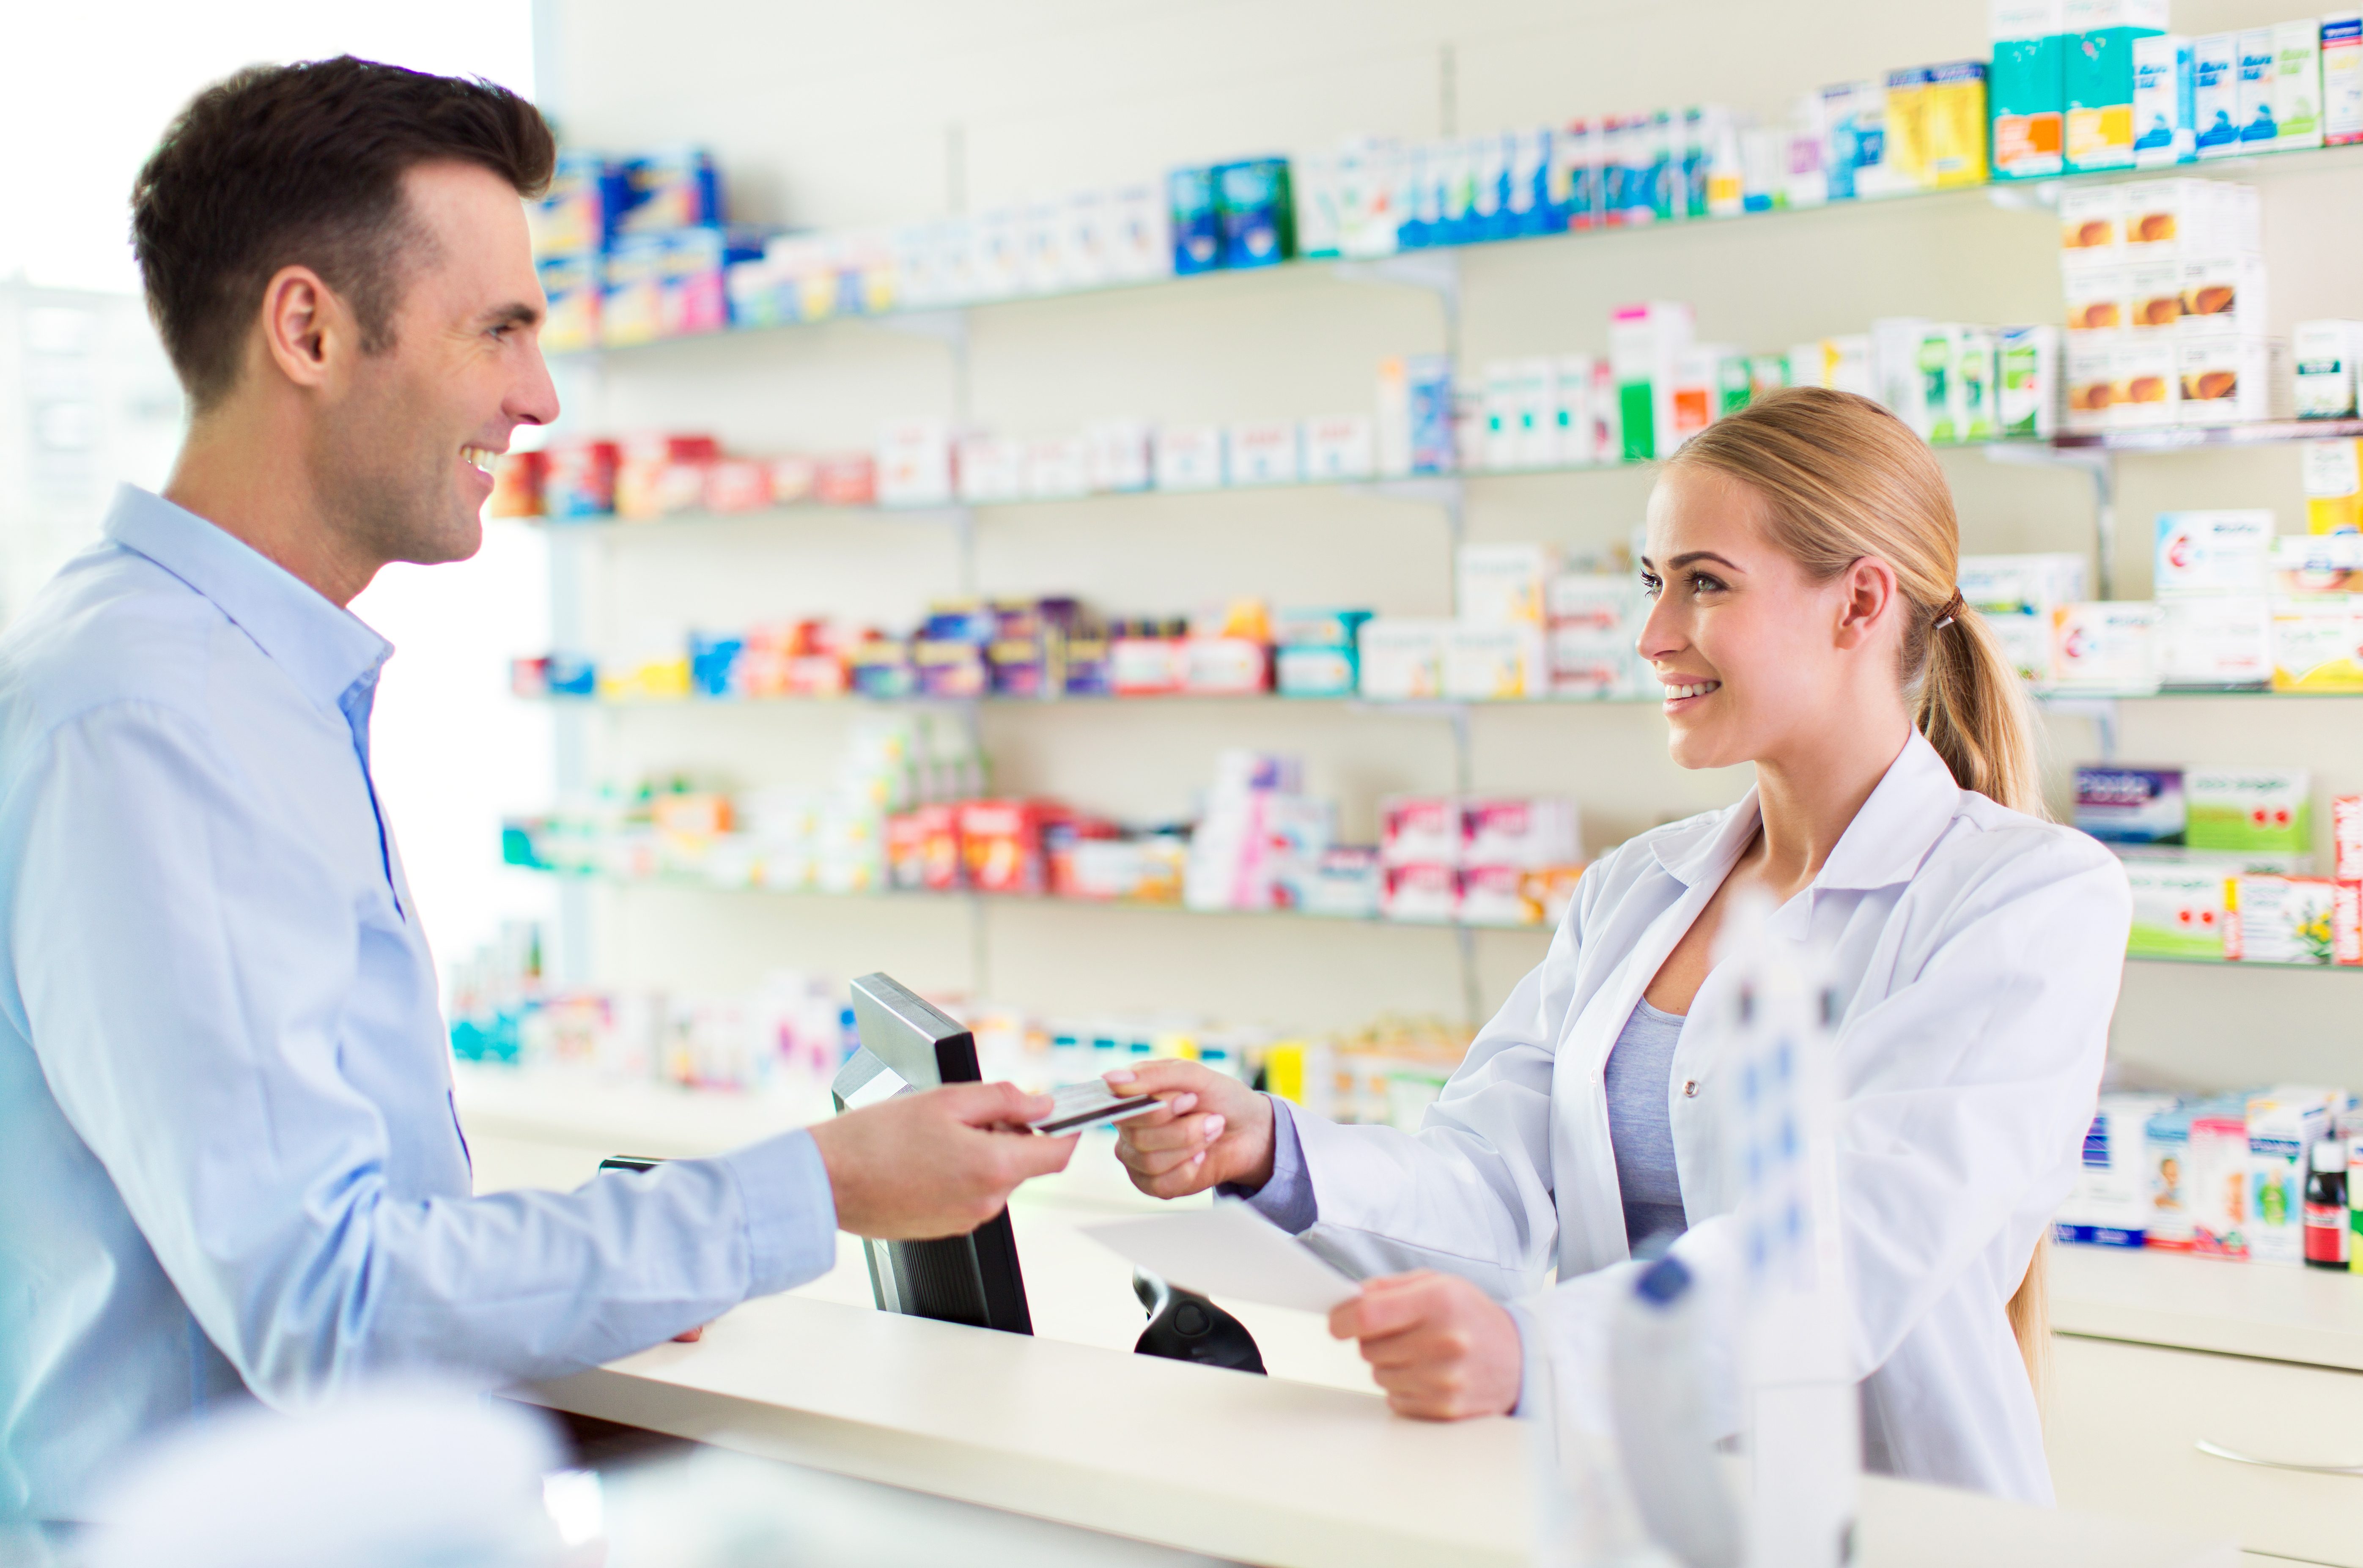 Qué servicios diferencian tu farmacia y ofrecen rentabilidad - Cetafarma